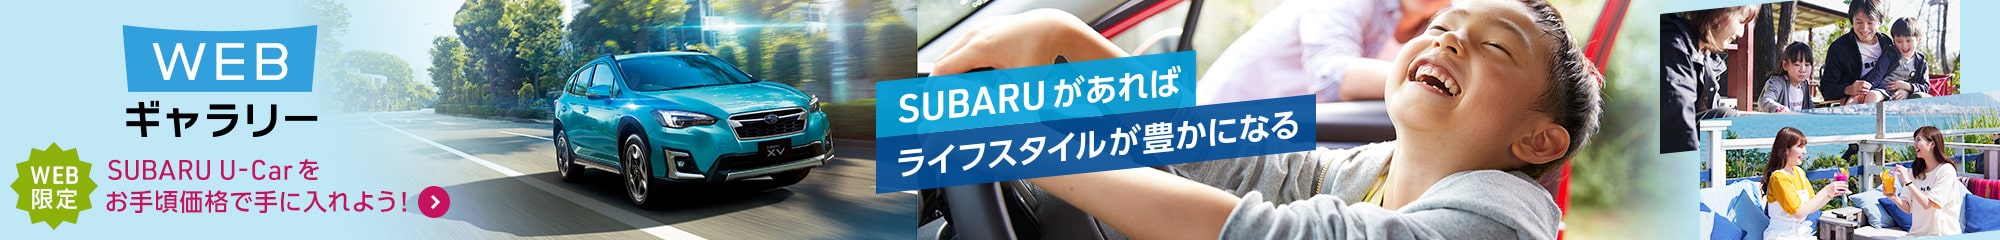 他には出ていない千葉スバルだけのSUBARU認定U-Carを、お手頃価格でご提供しています。Webギャラリー限定のラインアップから、あなたに合った1台を見つけましょう。